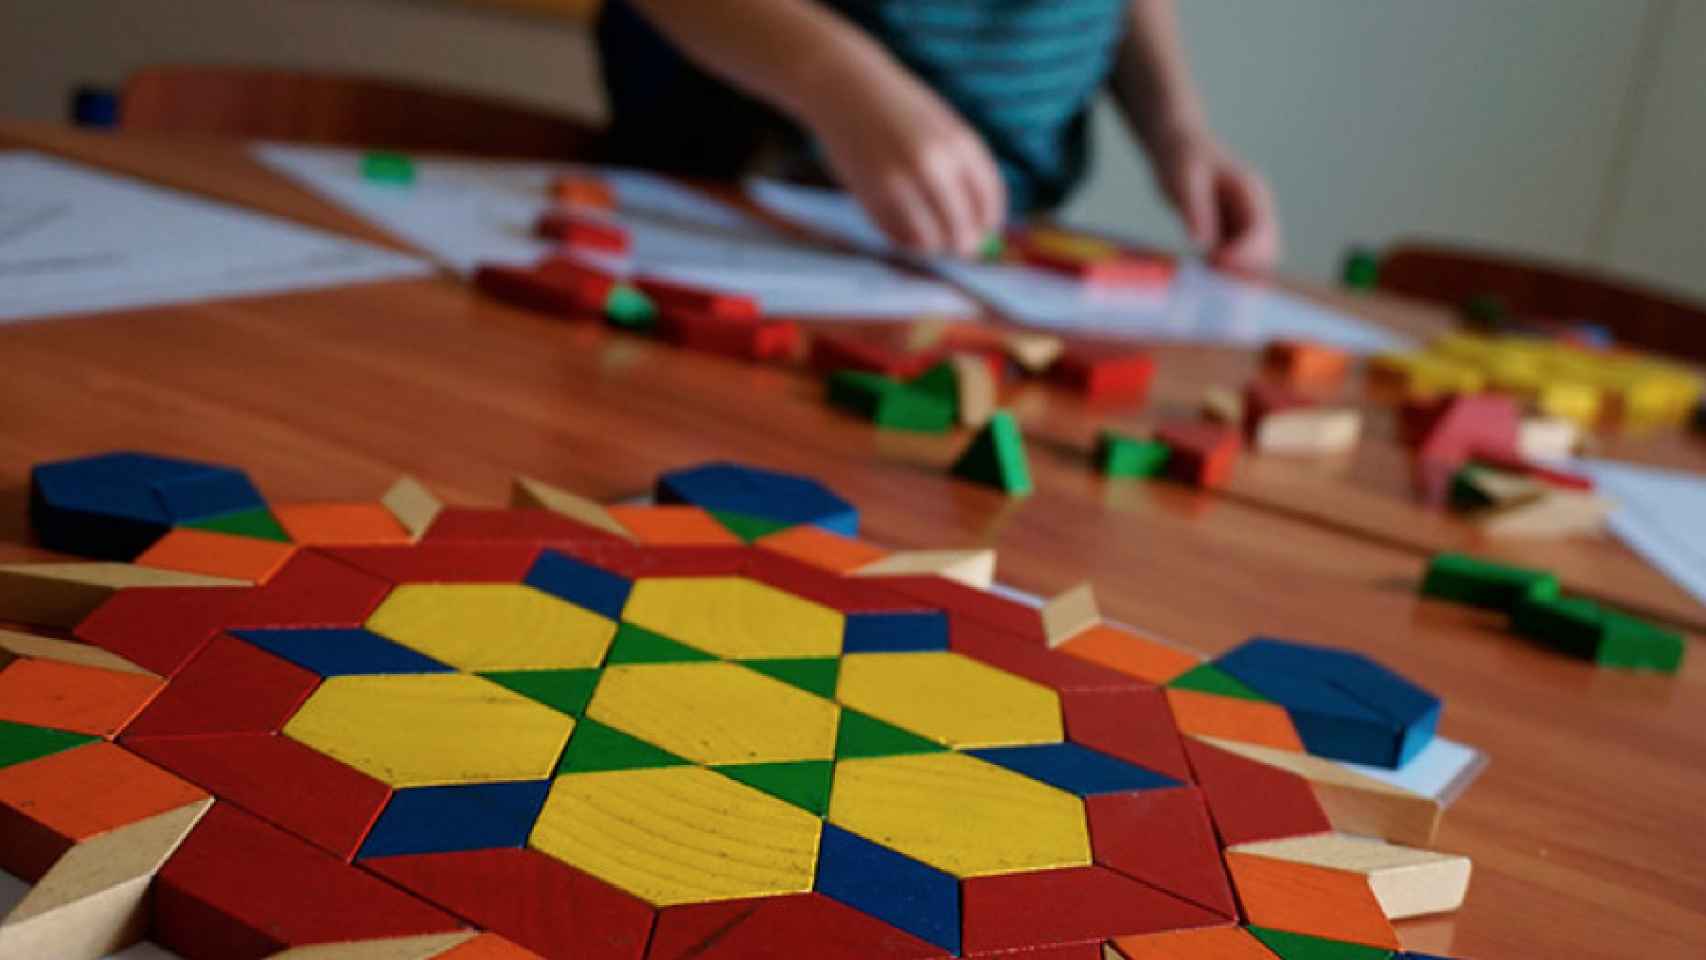 Tangram: qué es y son sus beneficios como juego educativo